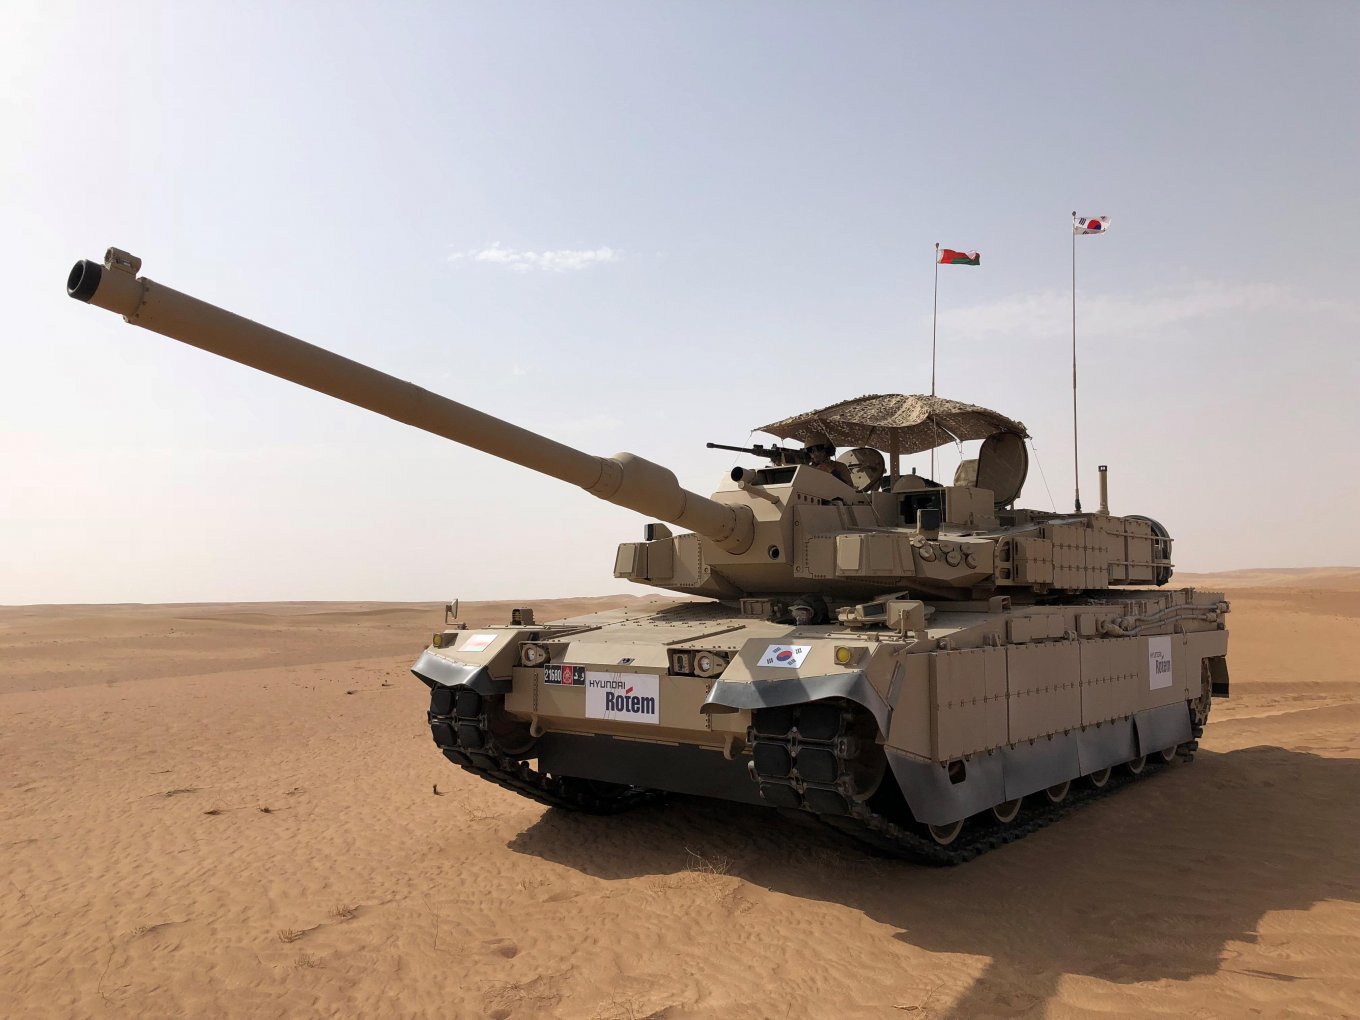 دبابة "كيه2 بلاك بانثر" تم اختبارها في عمان